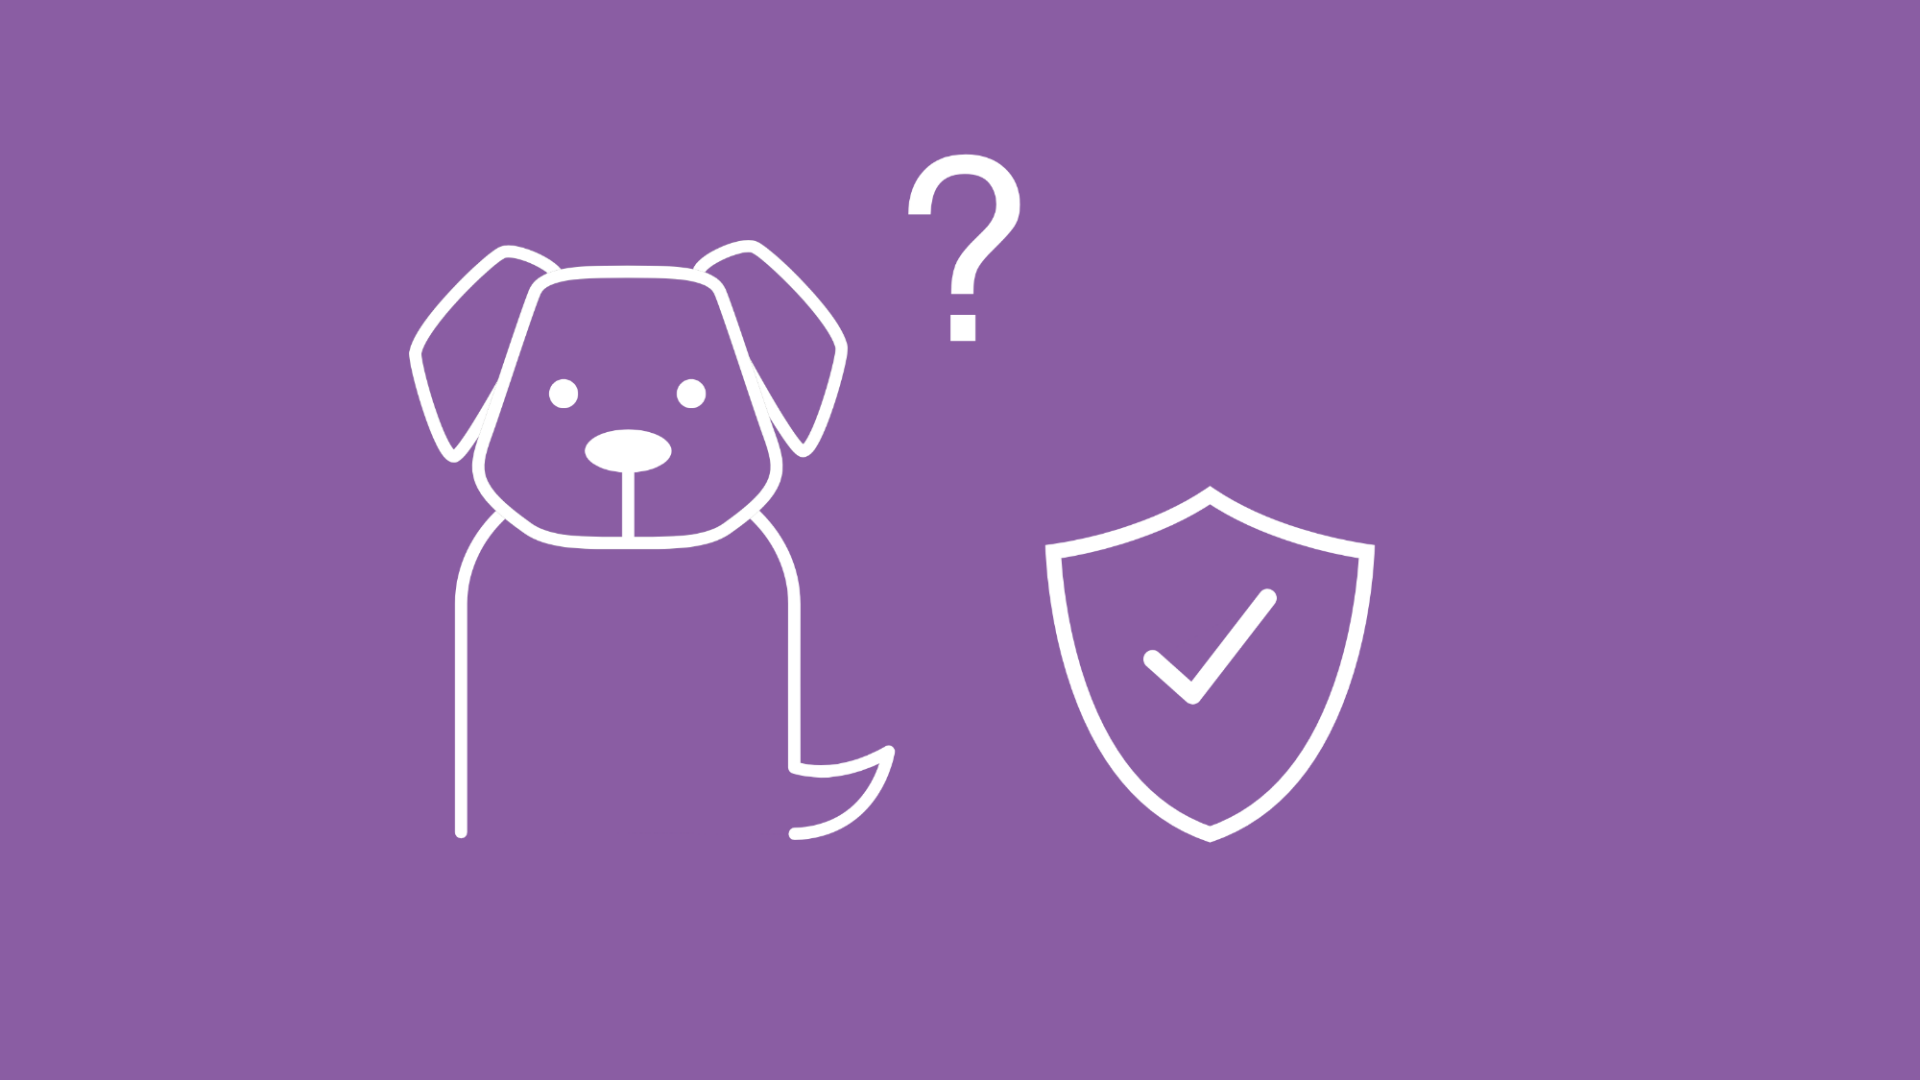 Auf der Grafik ist ein Hund mit einem Fragezeichen abgebildet, was die Frage symbolisiert, ob eine Hundekrankenversicherung sinnvoll ist.